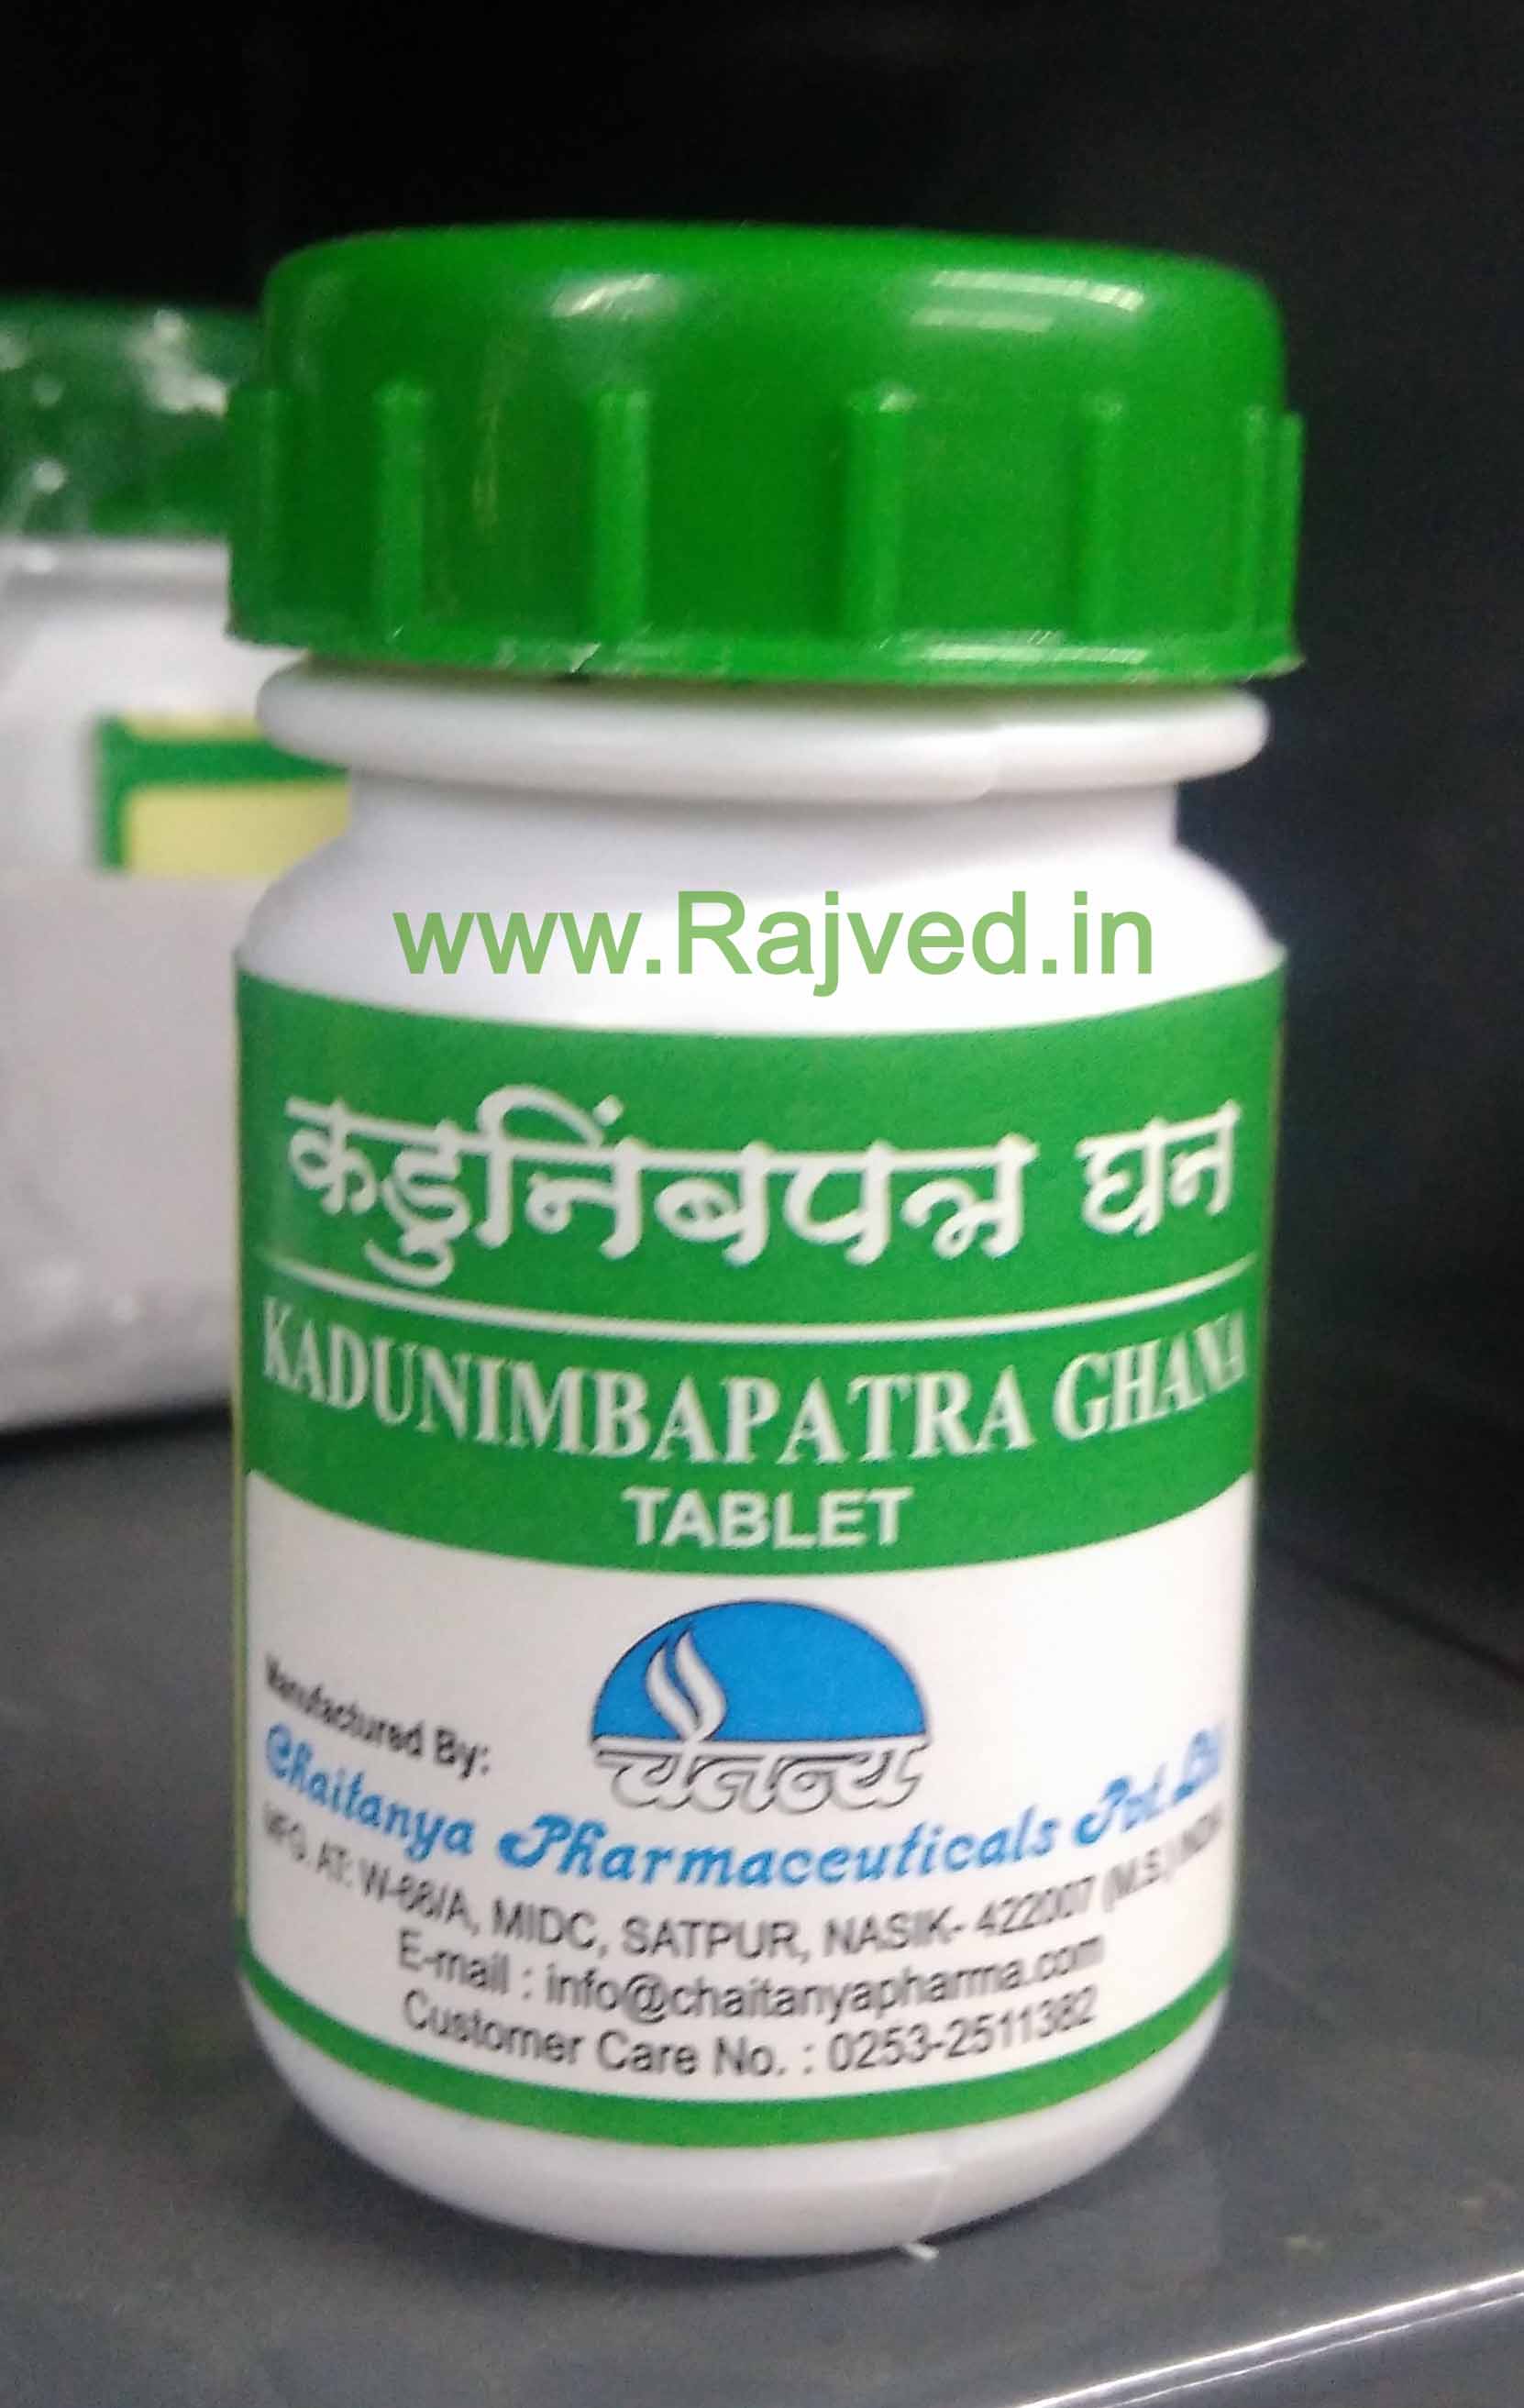 kadunimbapatra ghana 2000tab upto 20% off free shipping chaitanya pharmaceuticals